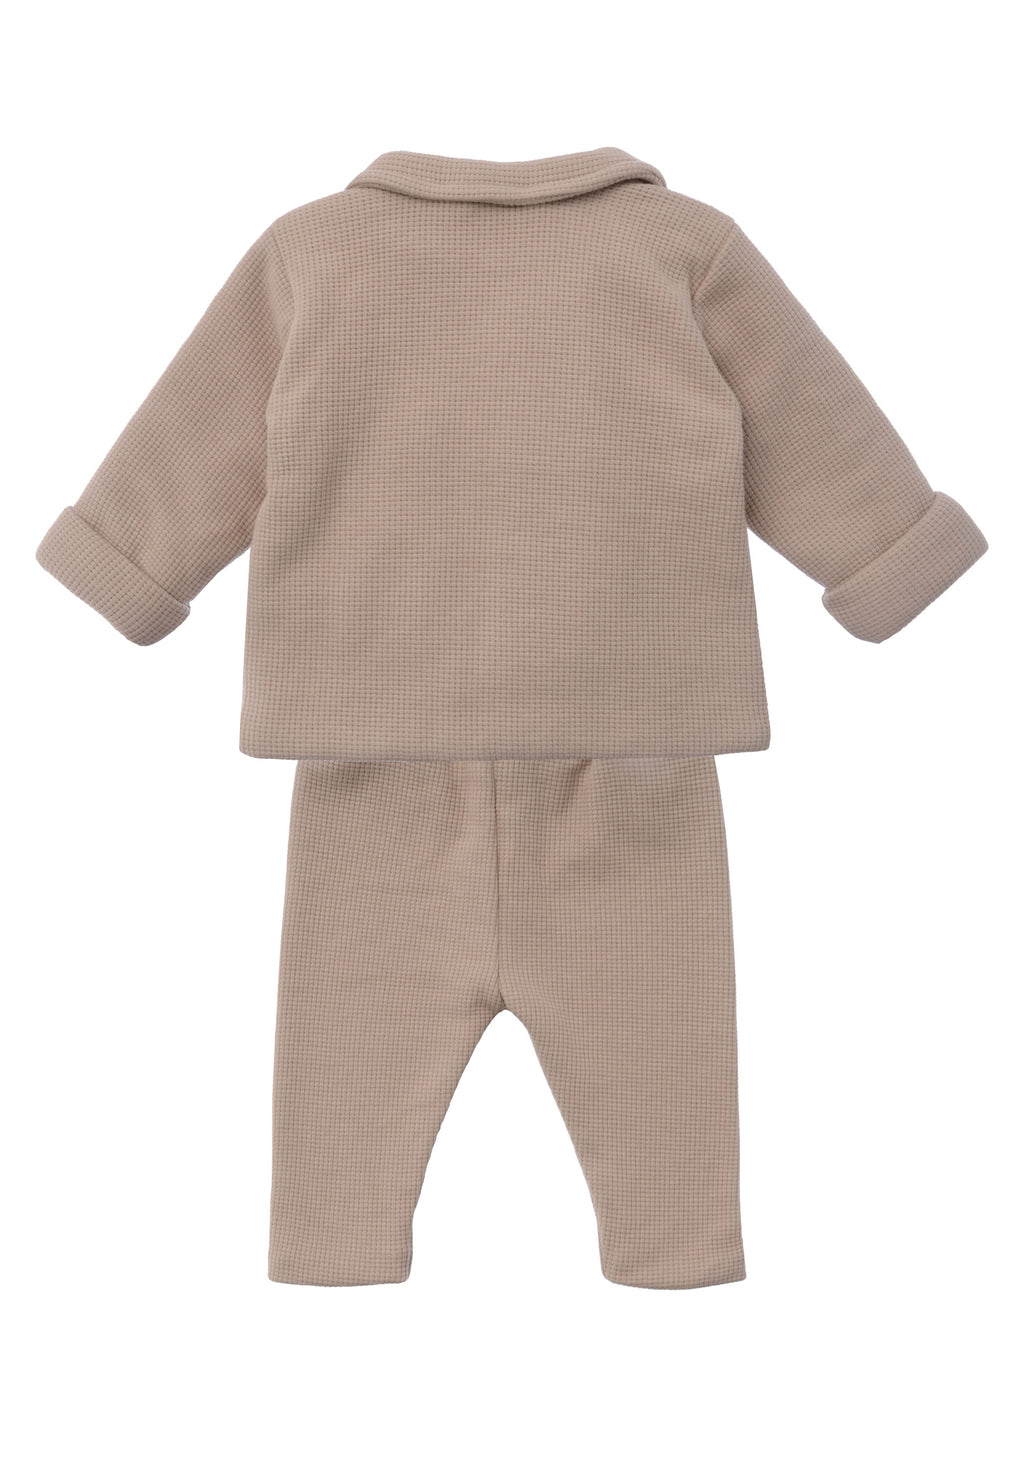 3-teiliges Babyset aus Waffelpiqué in beige mit passendem Langarmshirt in ecru.